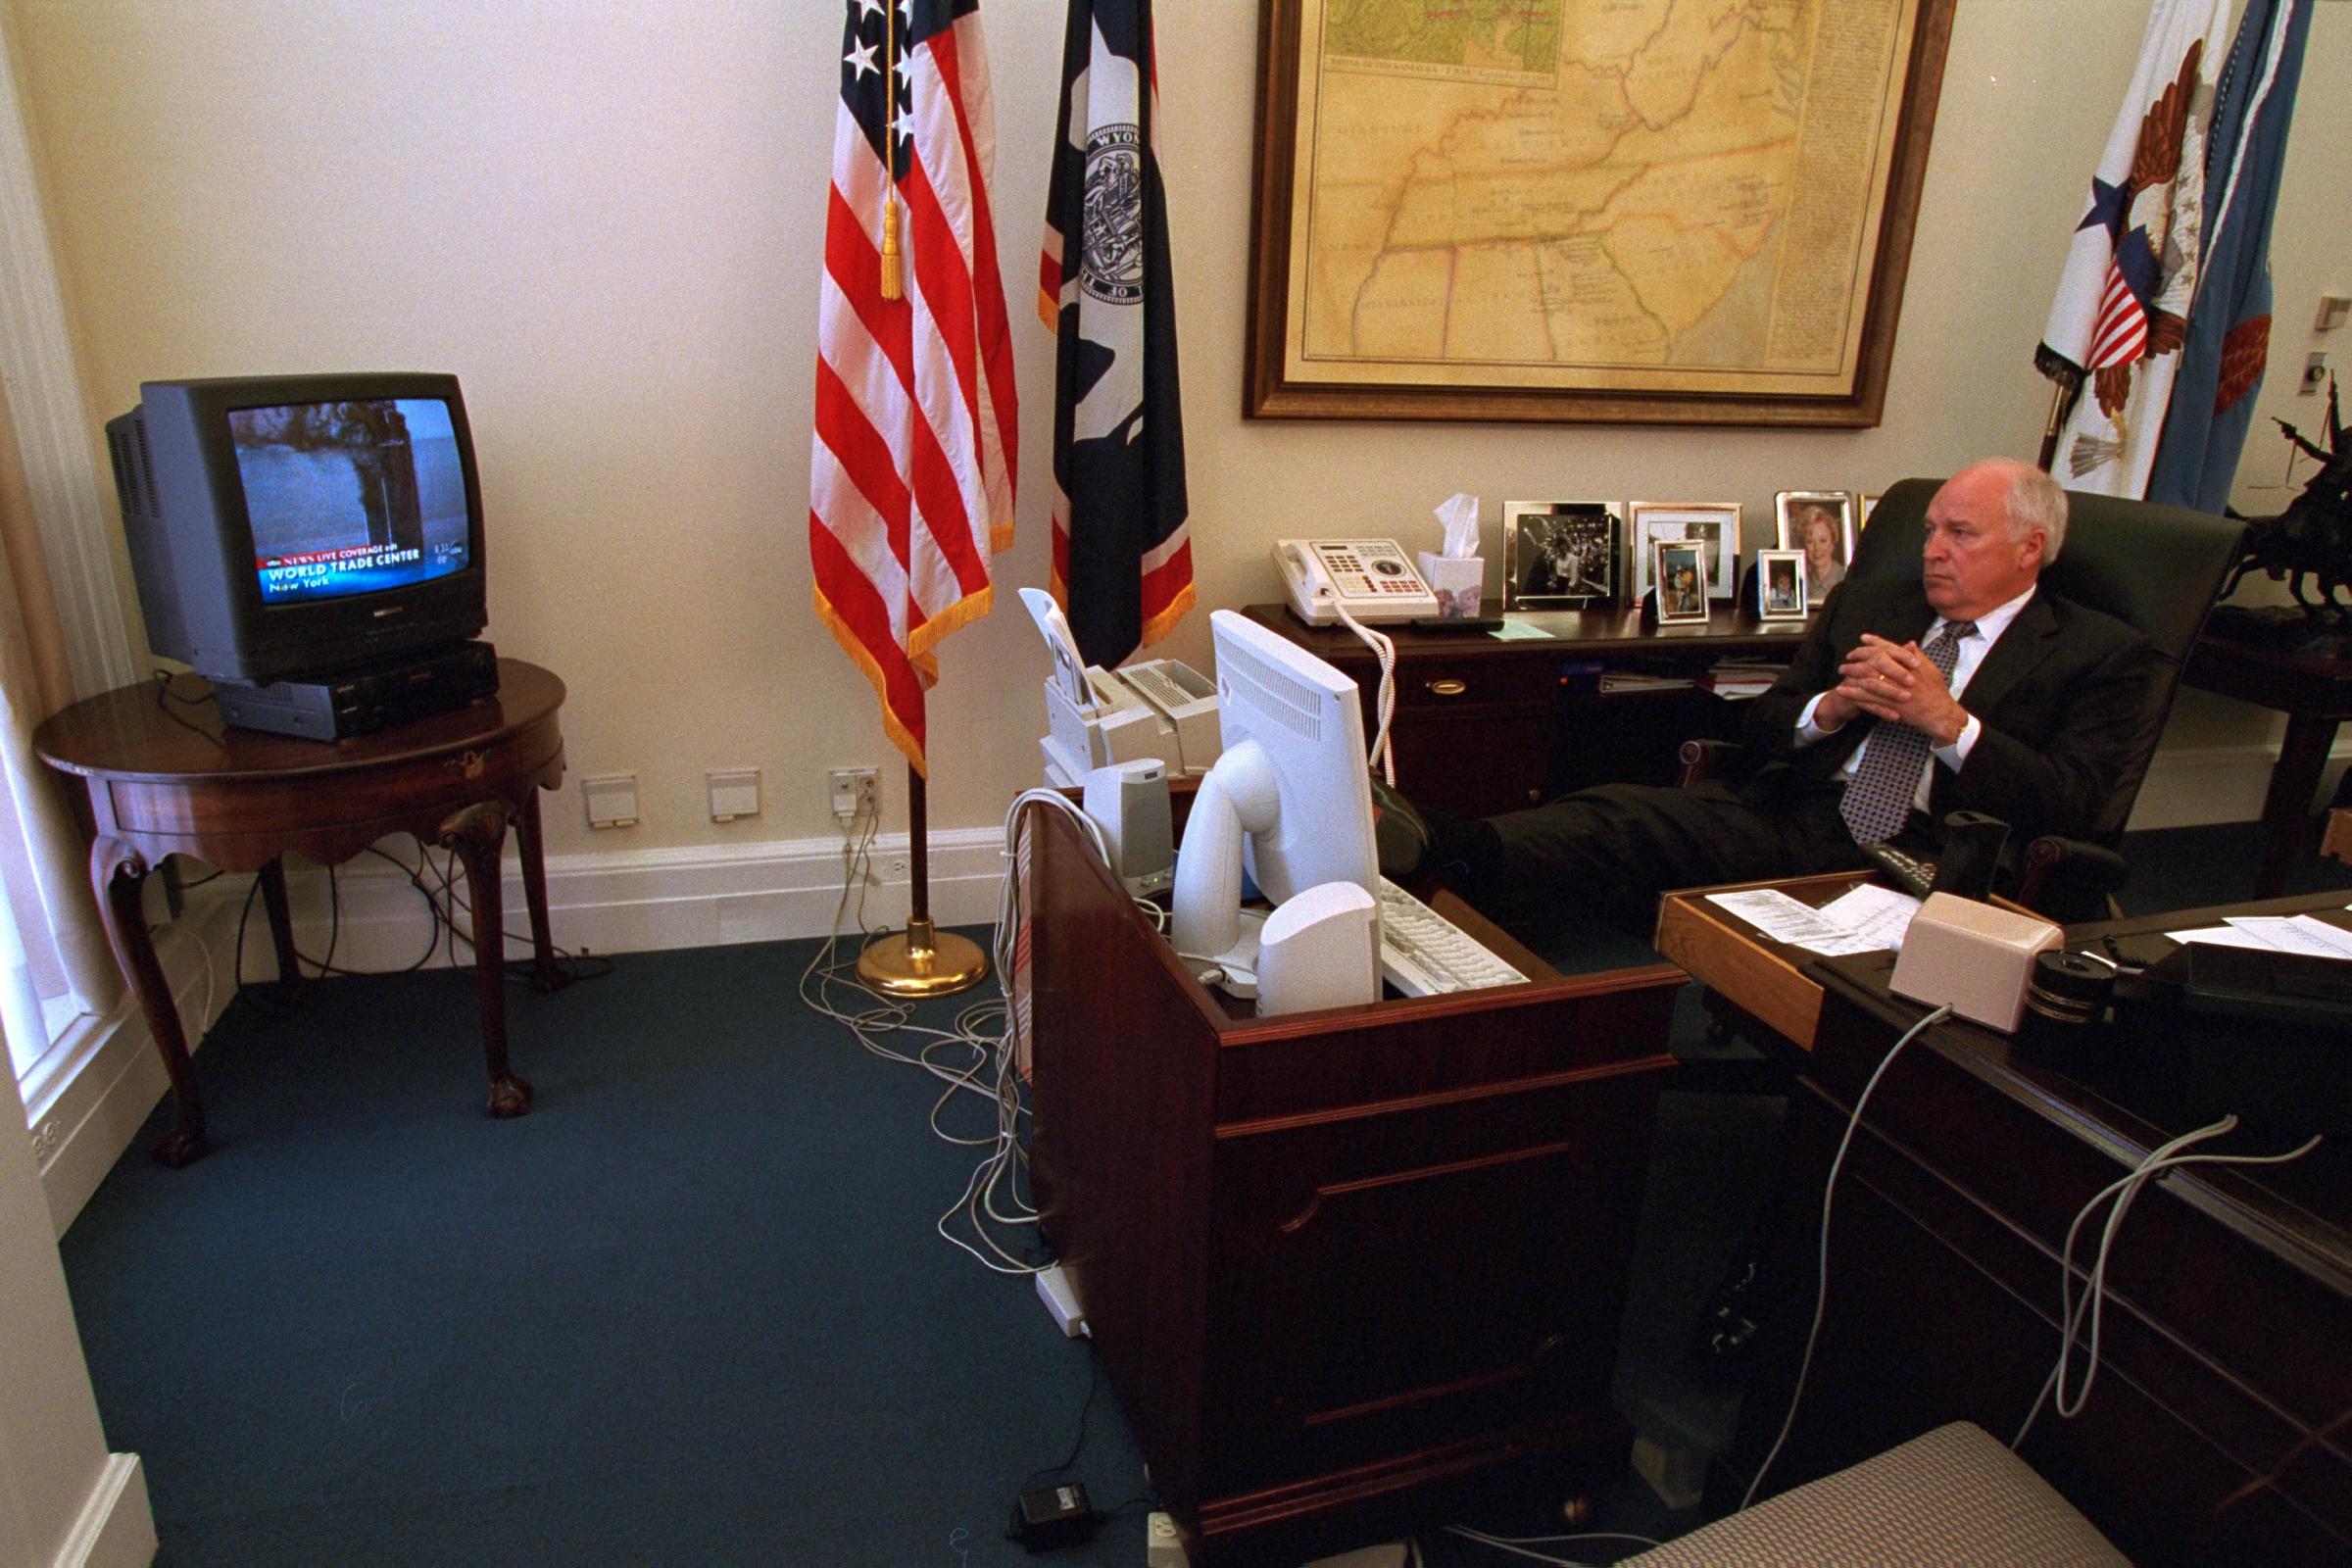 Dick Cheney 911 Photos